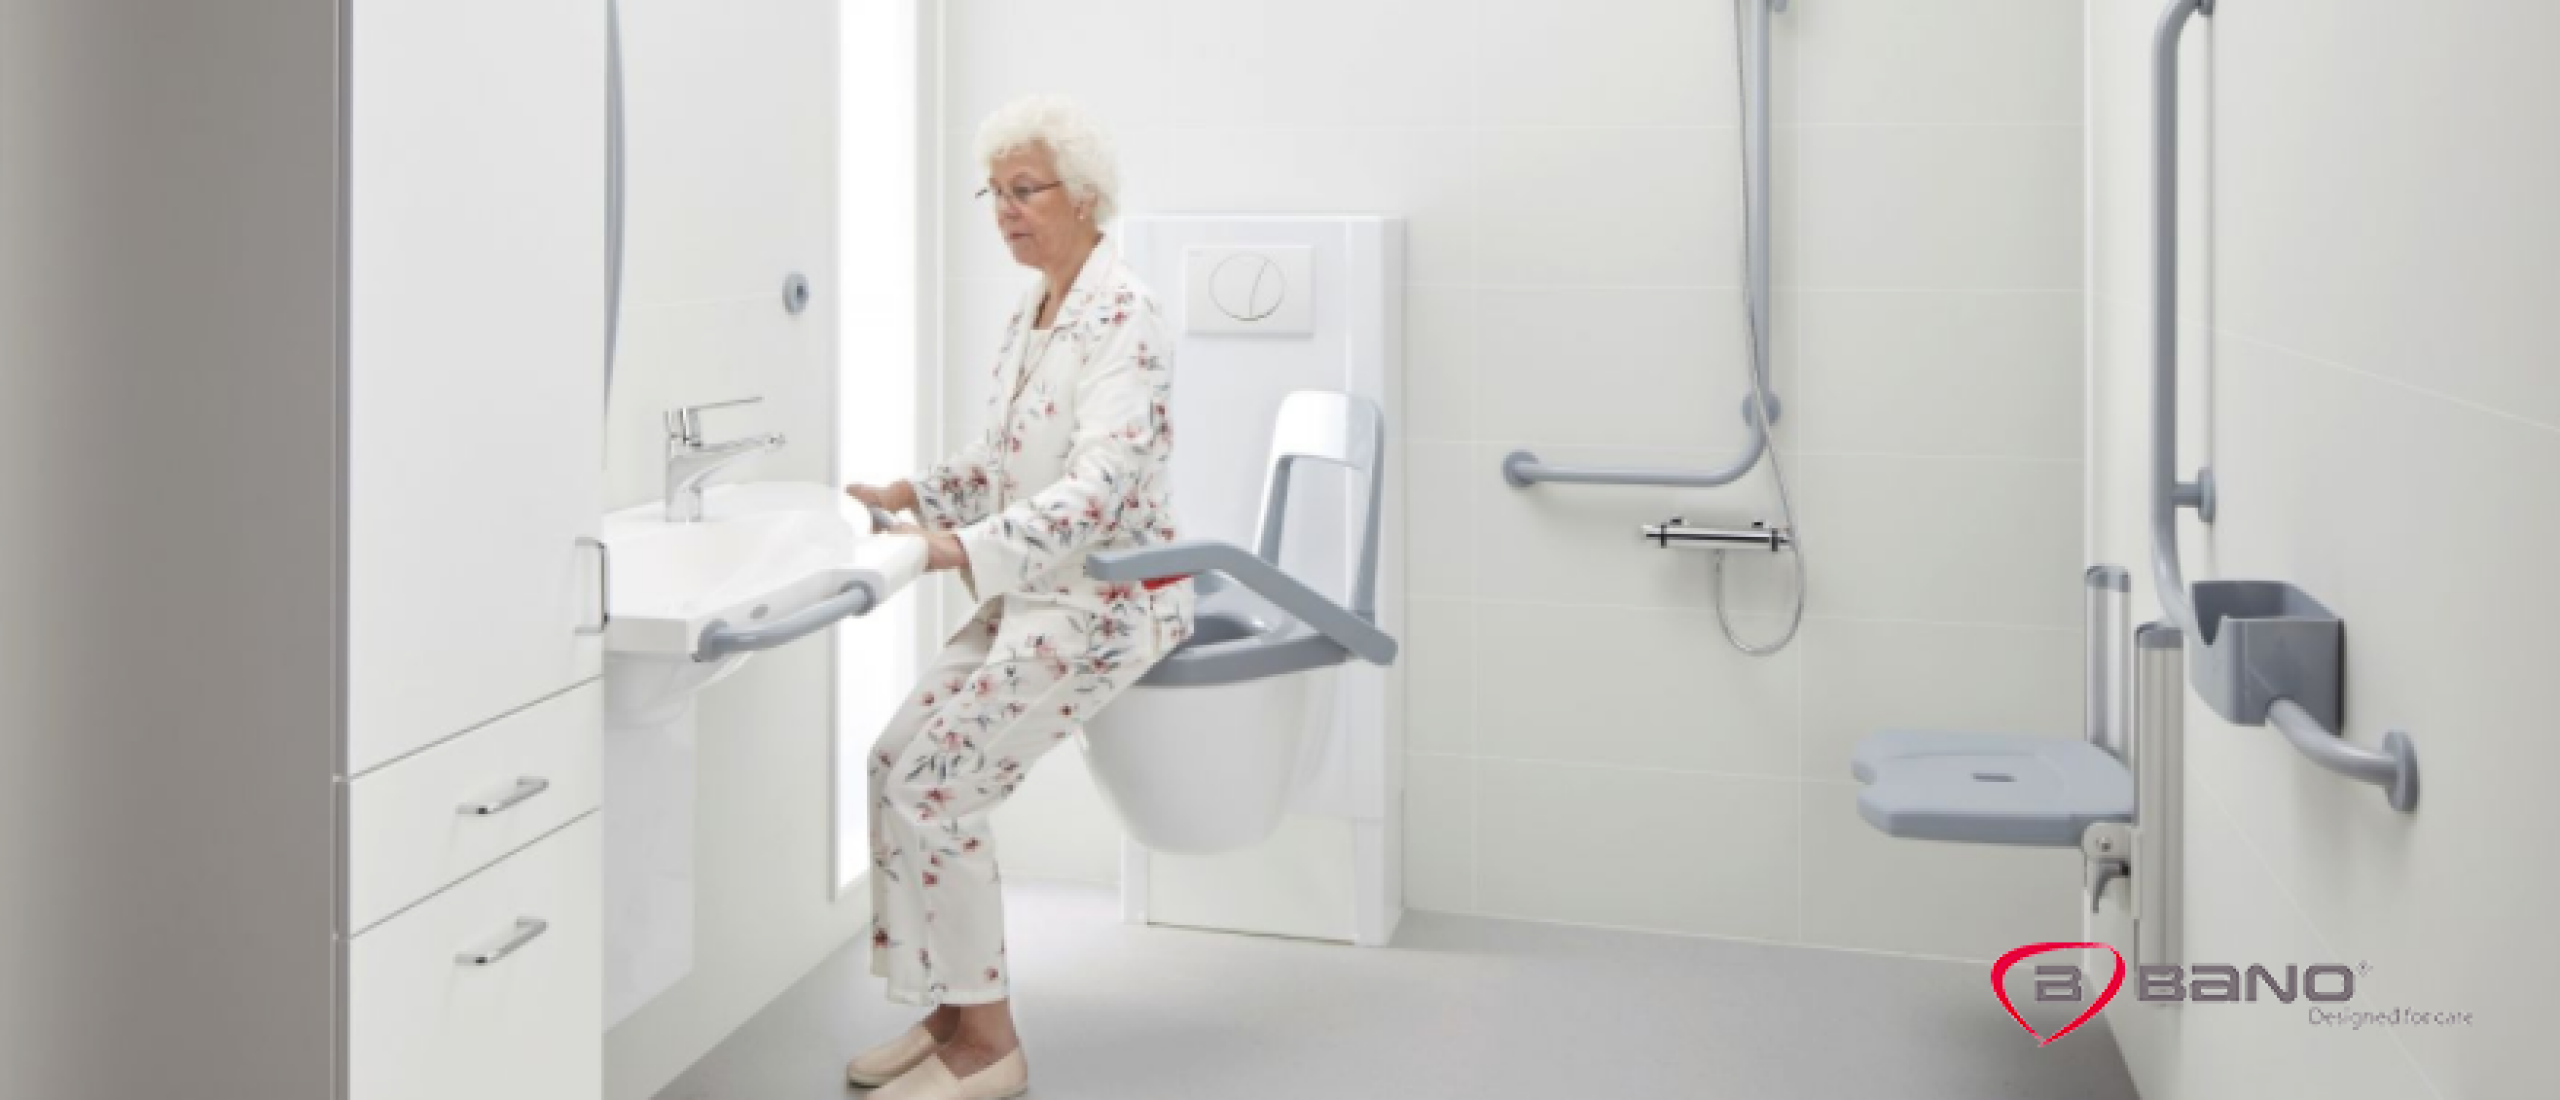 Bano Benelux introduceert draaibaar toilet voor ouderen en zorgbehoevenden